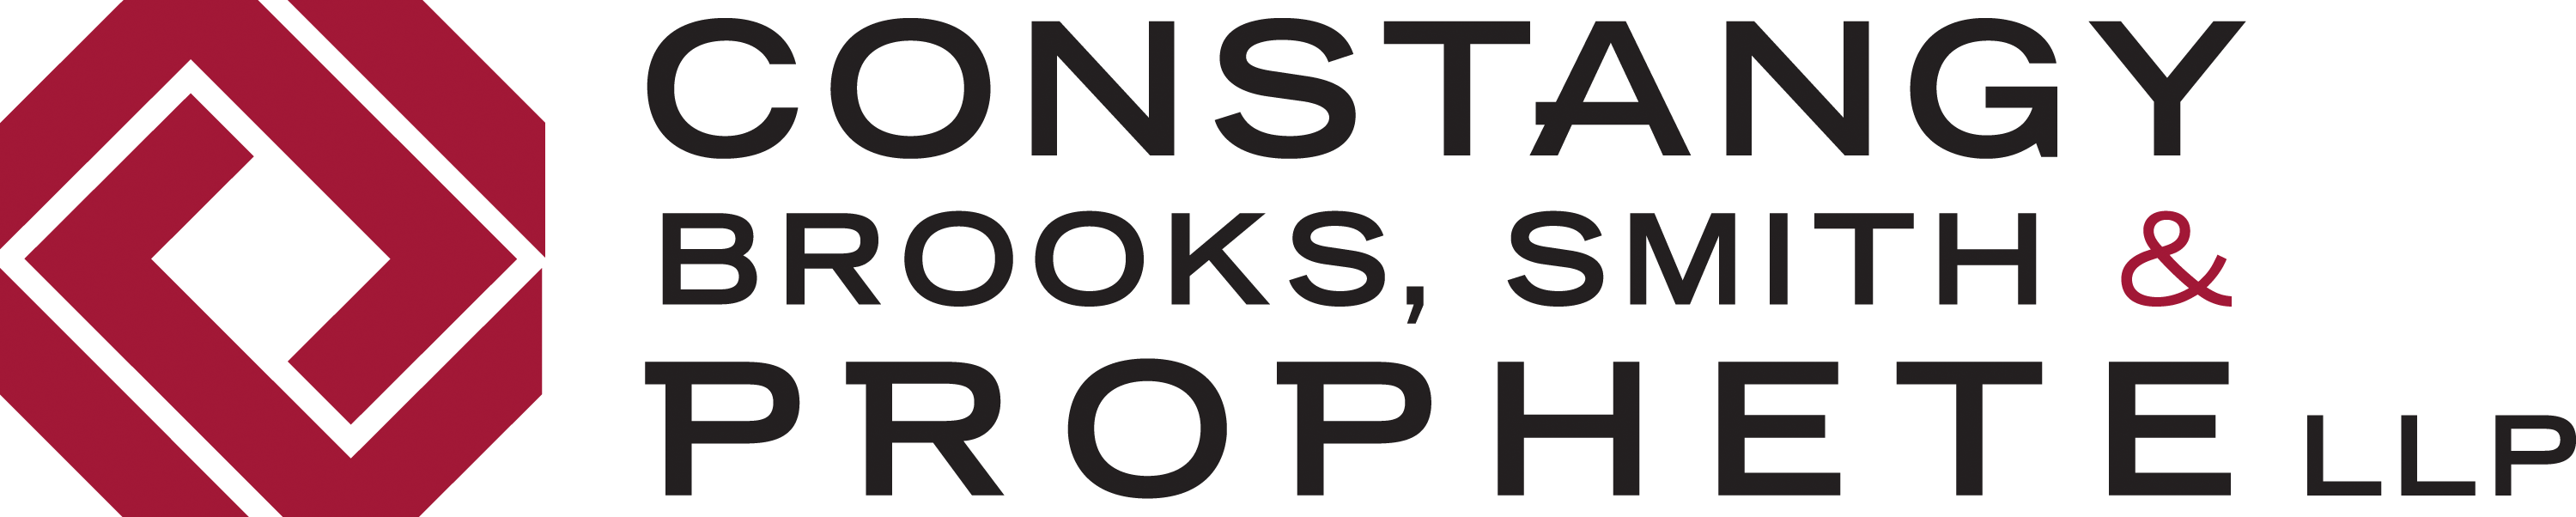 Constangy, Brooks, Smith & Prophete, LLP logo